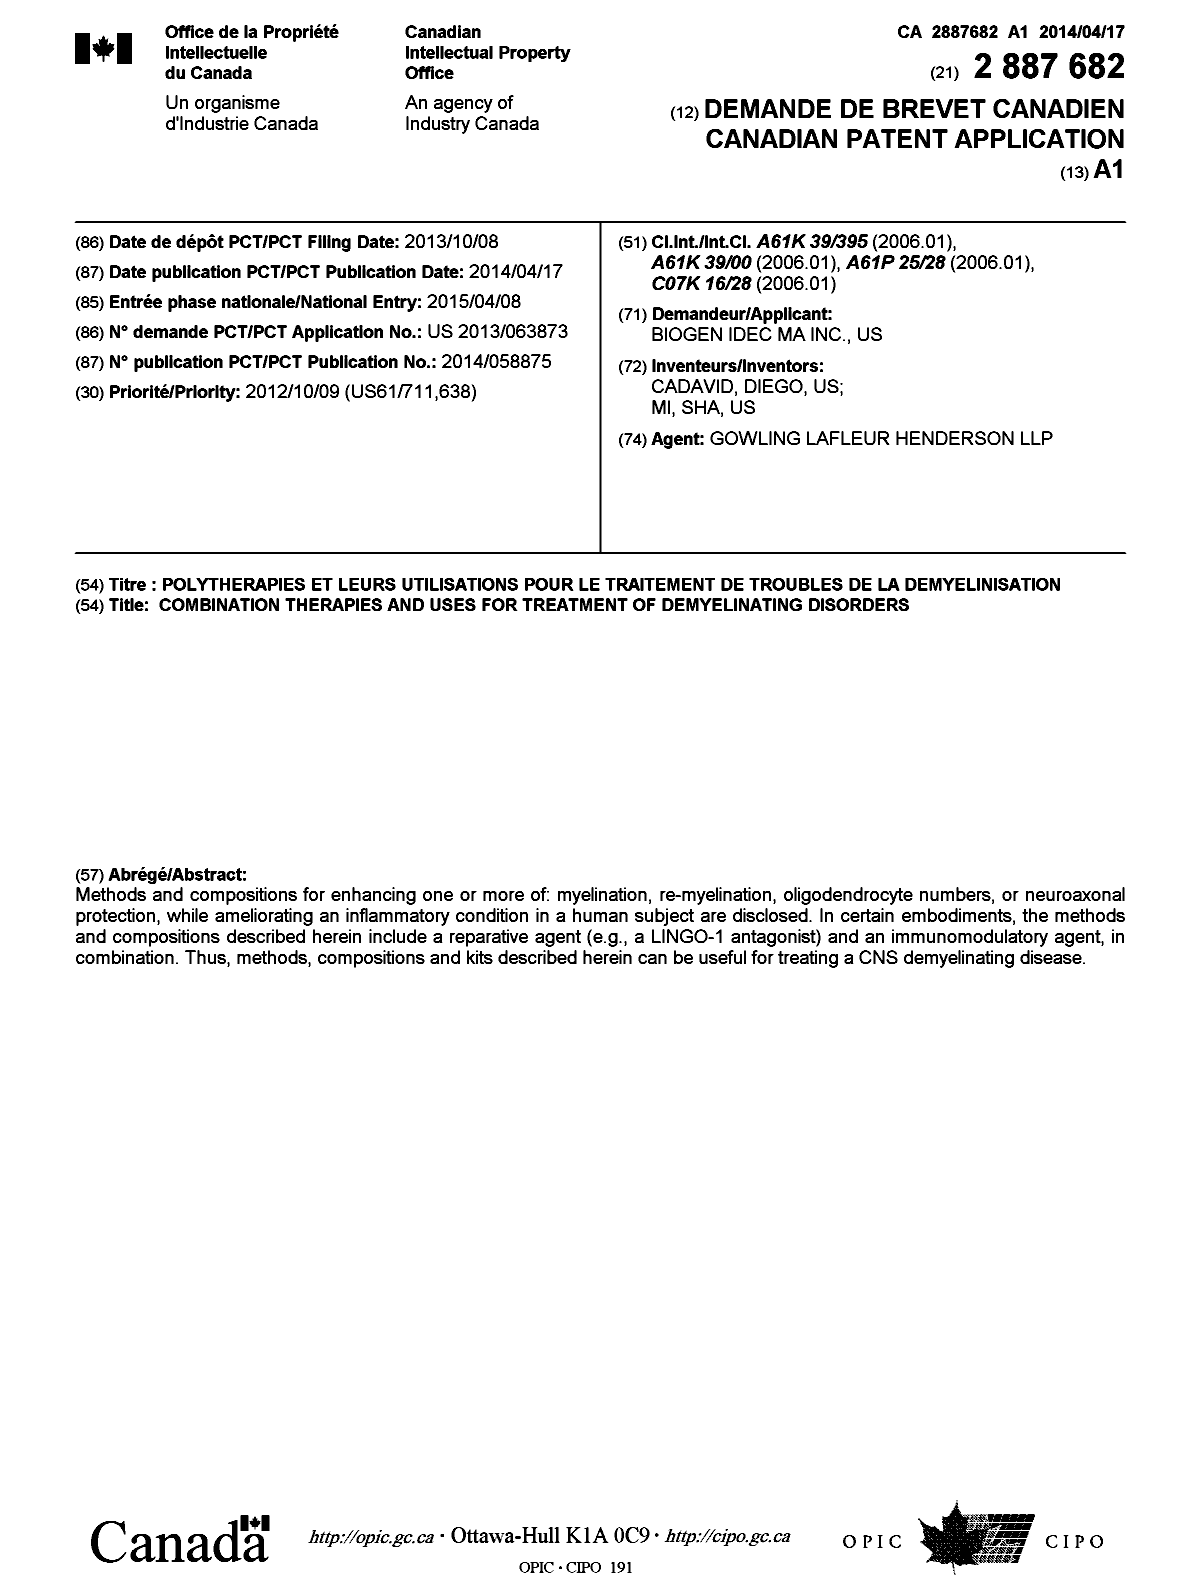 Document de brevet canadien 2887682. Page couverture 20150427. Image 1 de 1